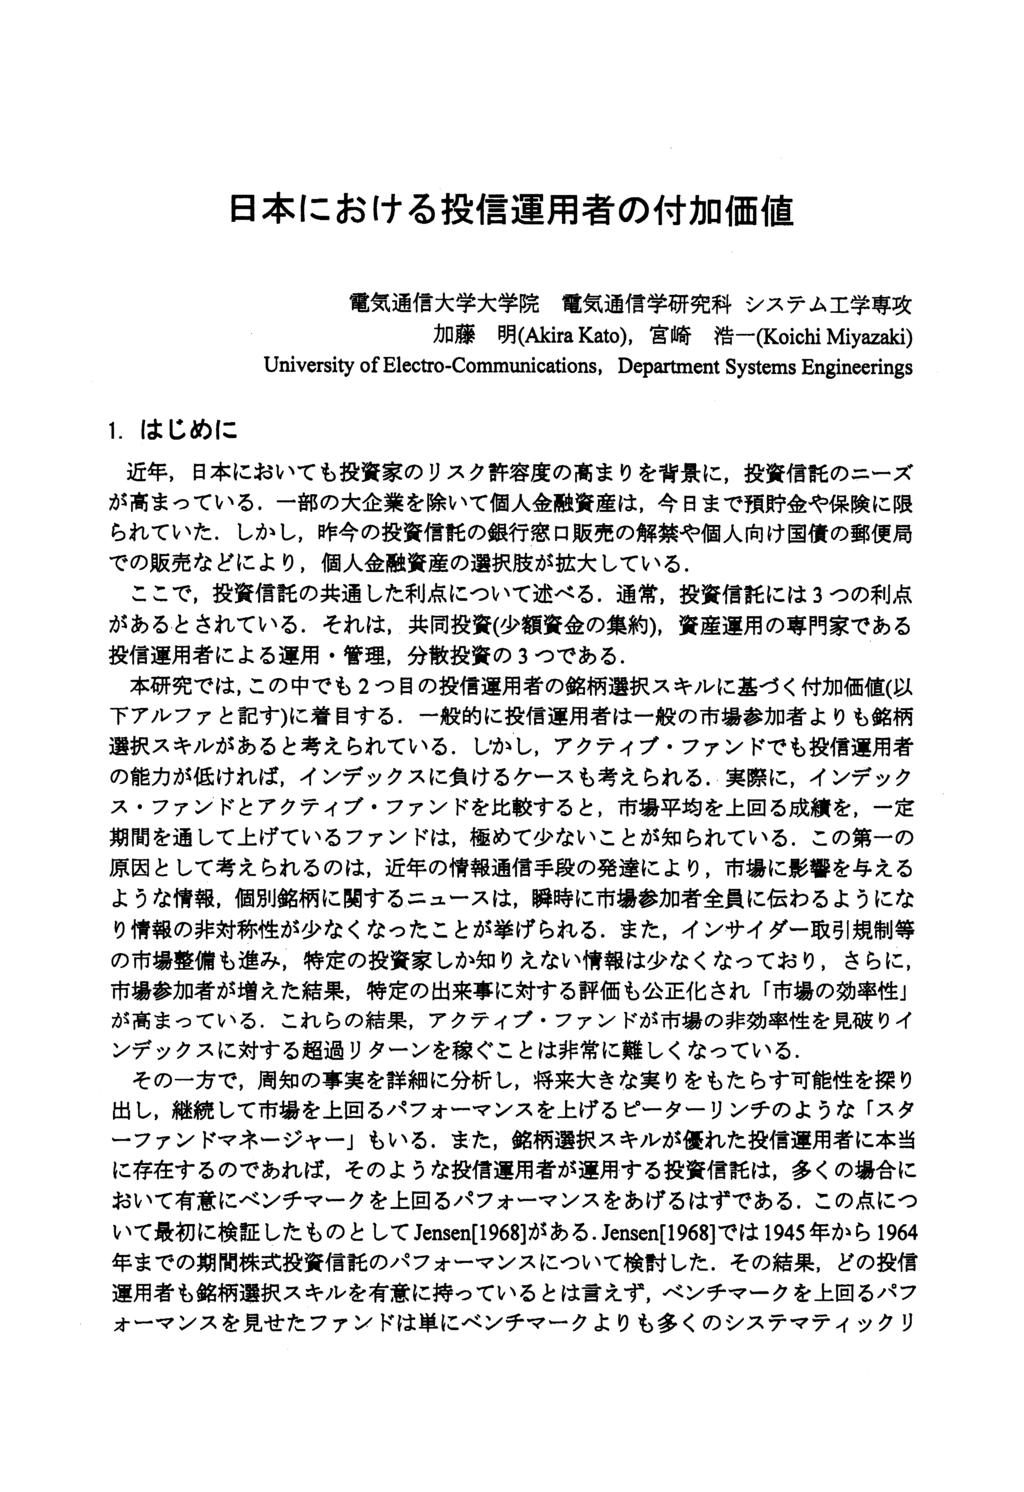 1580 2008 72-85 72 (Akira Kato), (Koichi Miyazaki) University of Electro-Communications, Department